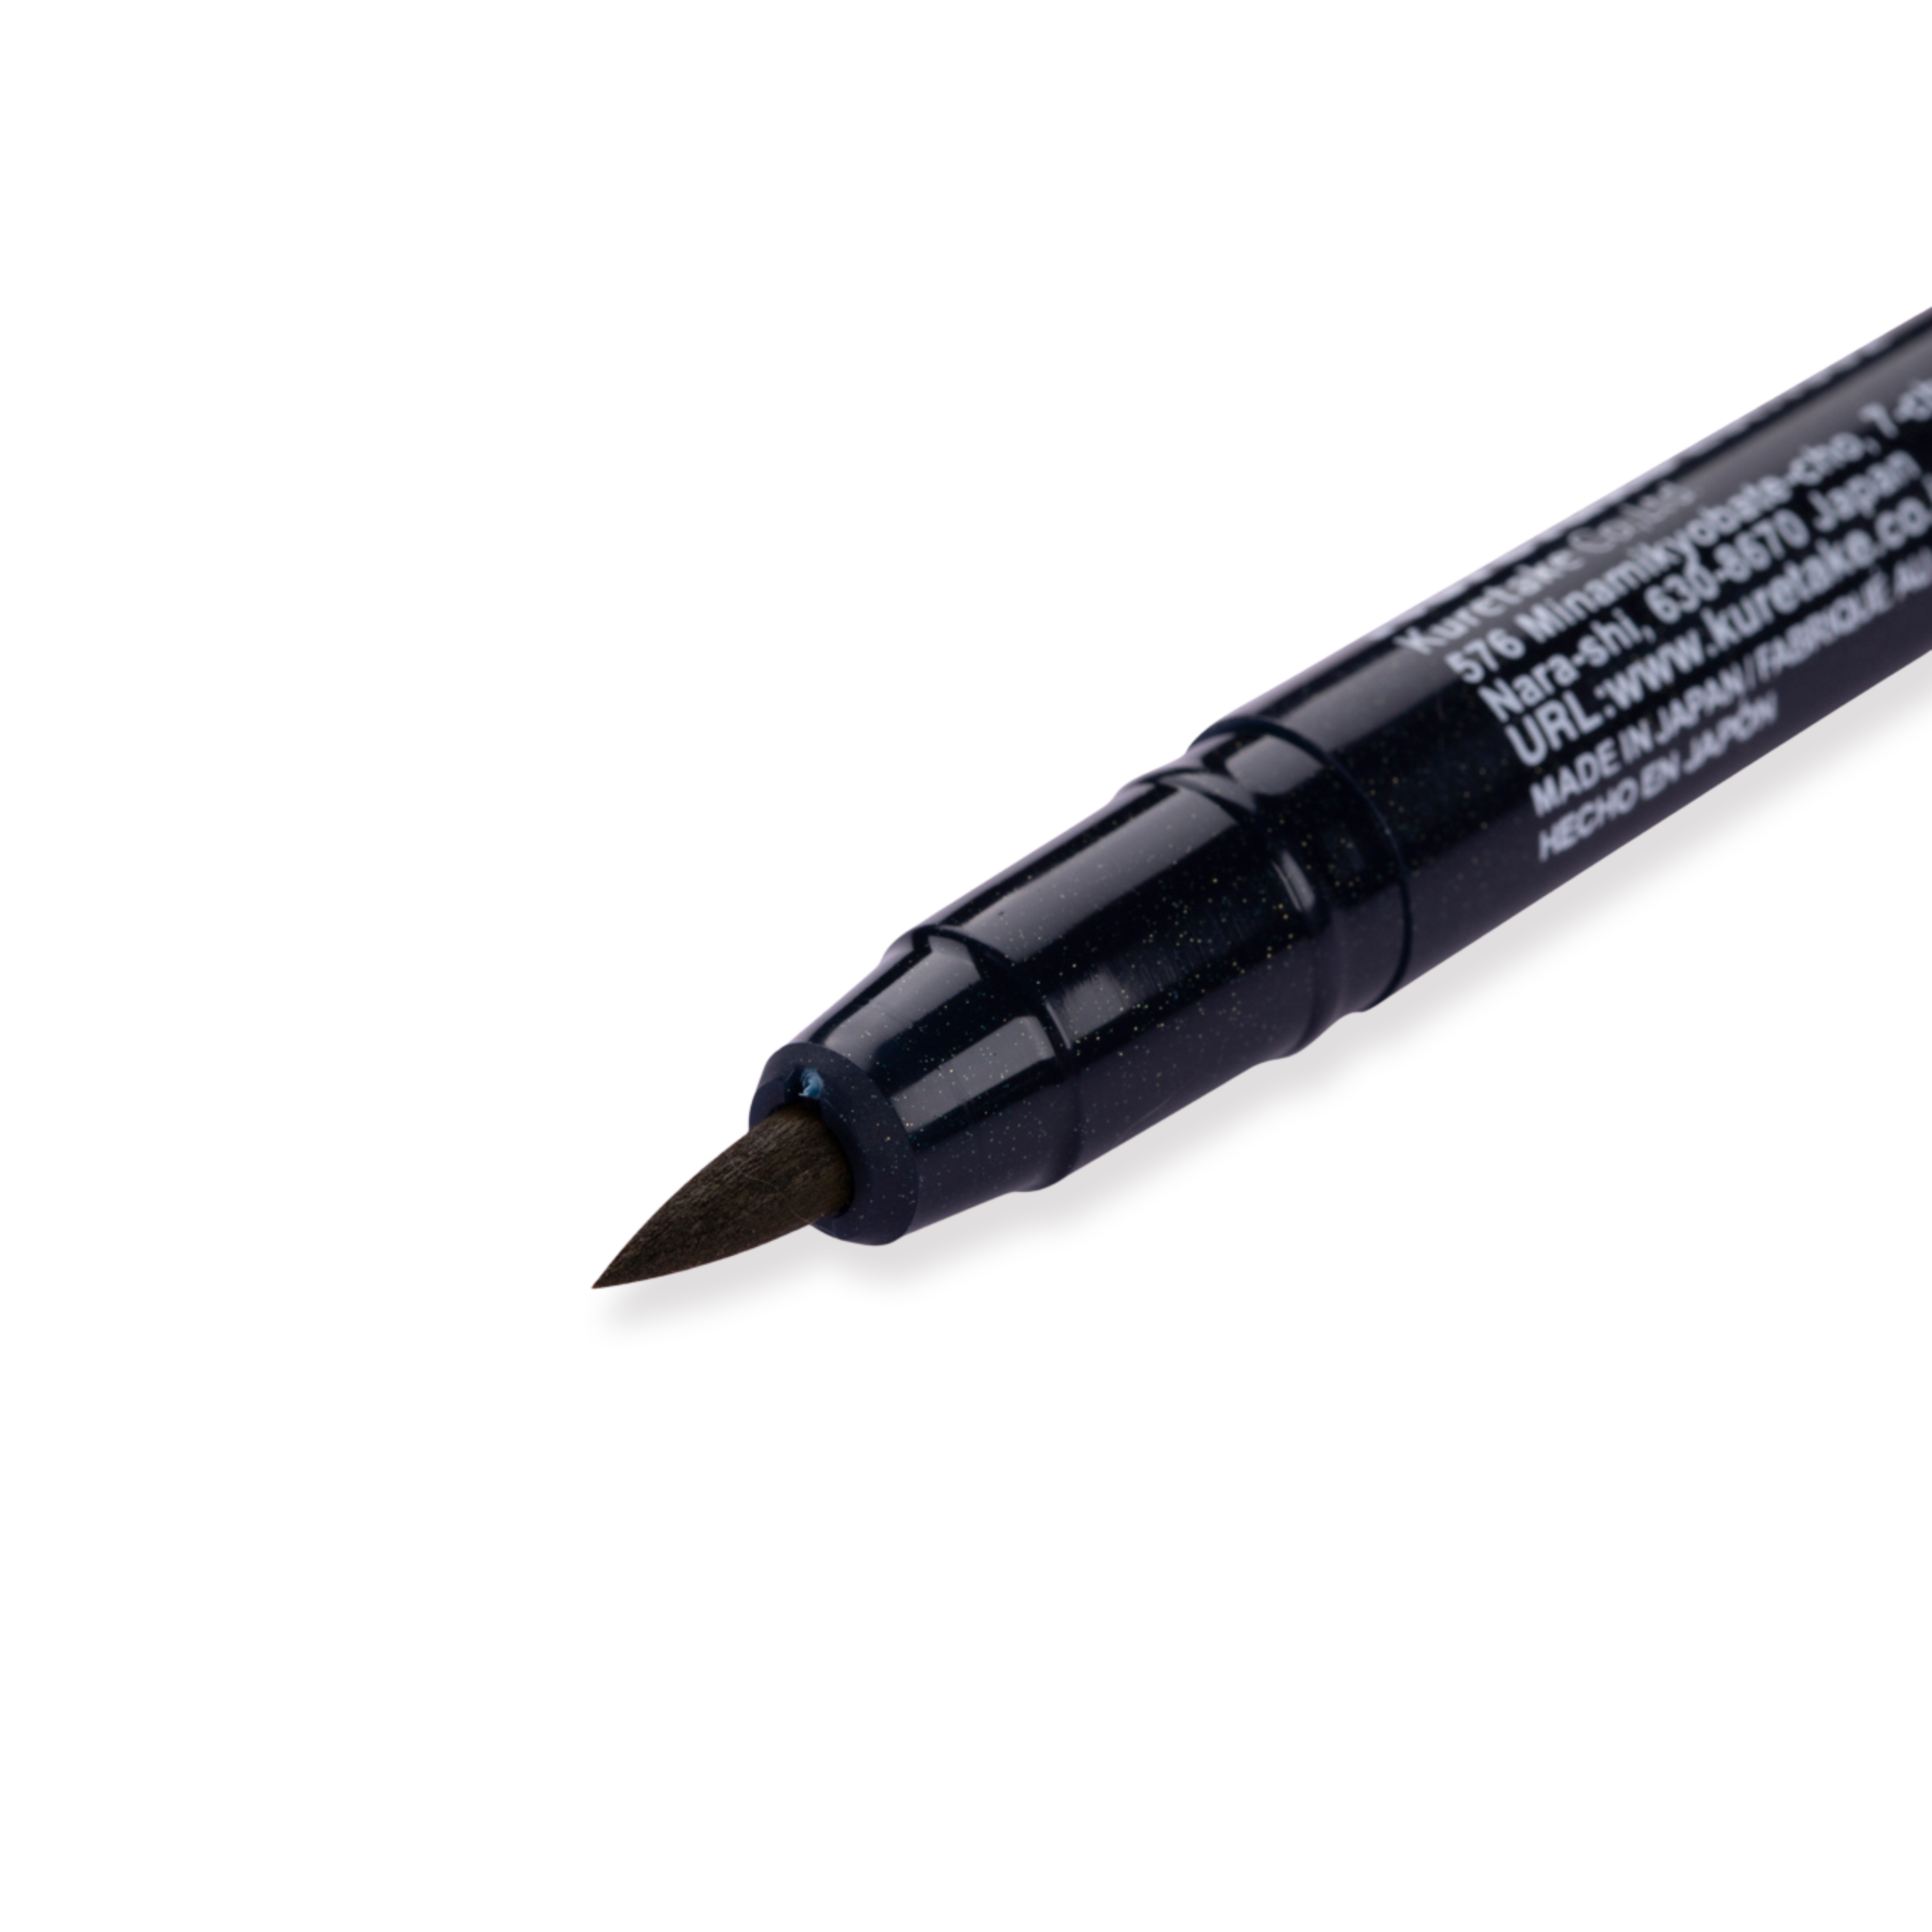 Kuretake Zig Fudebiyori Brush Pen - Dark Oatmeal 066